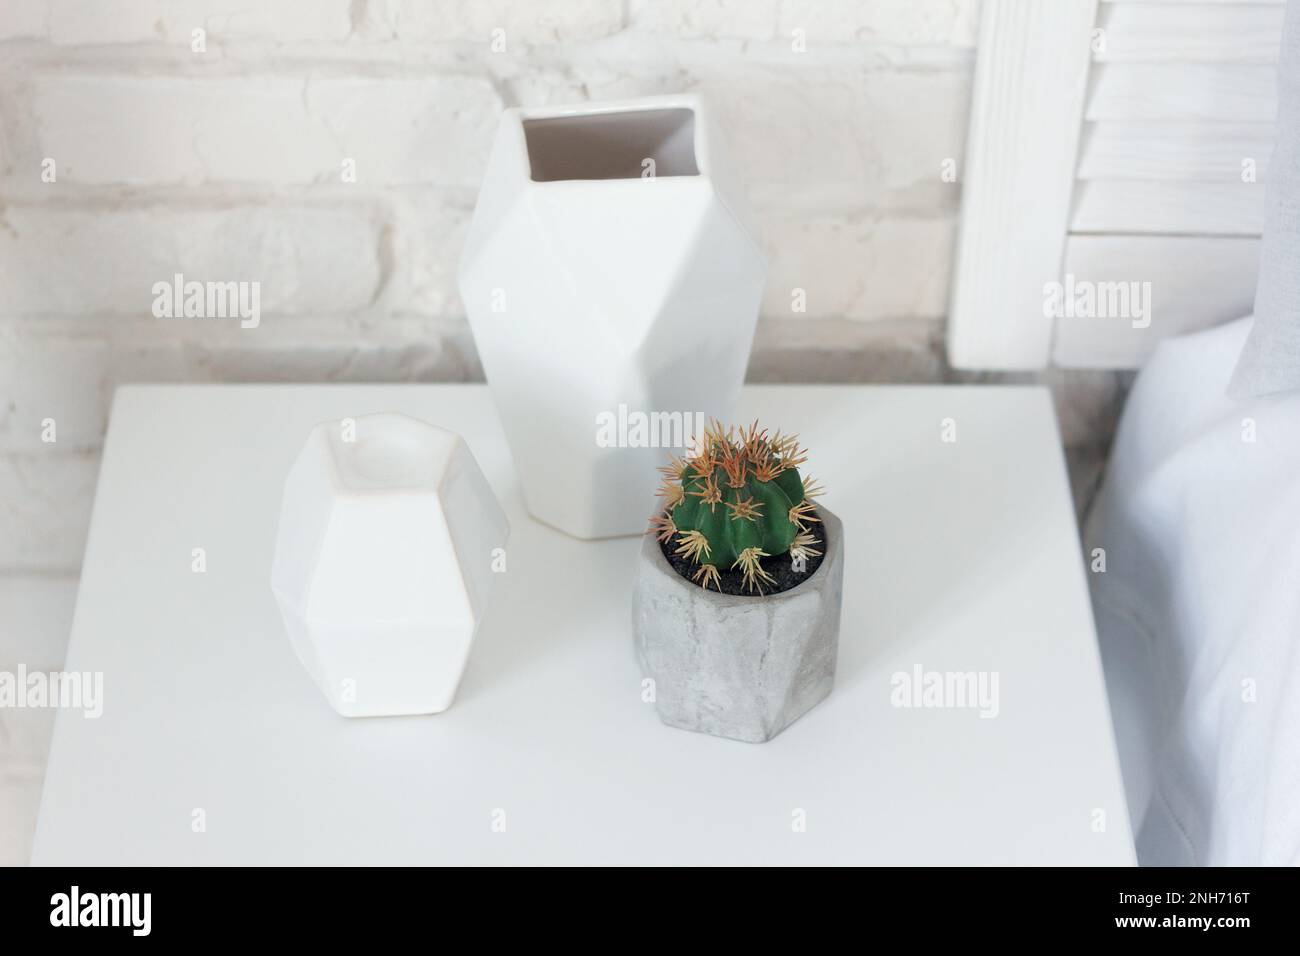 Eine Zimmerpflanze aus der Kaktusfamilie, in einer grauen Vase gepflanzt, liegt auf einem Nachttisch neben einem Kerzenhalter und einer Vase. Diese Artikel lassen sich gut kombinieren w Stockfoto